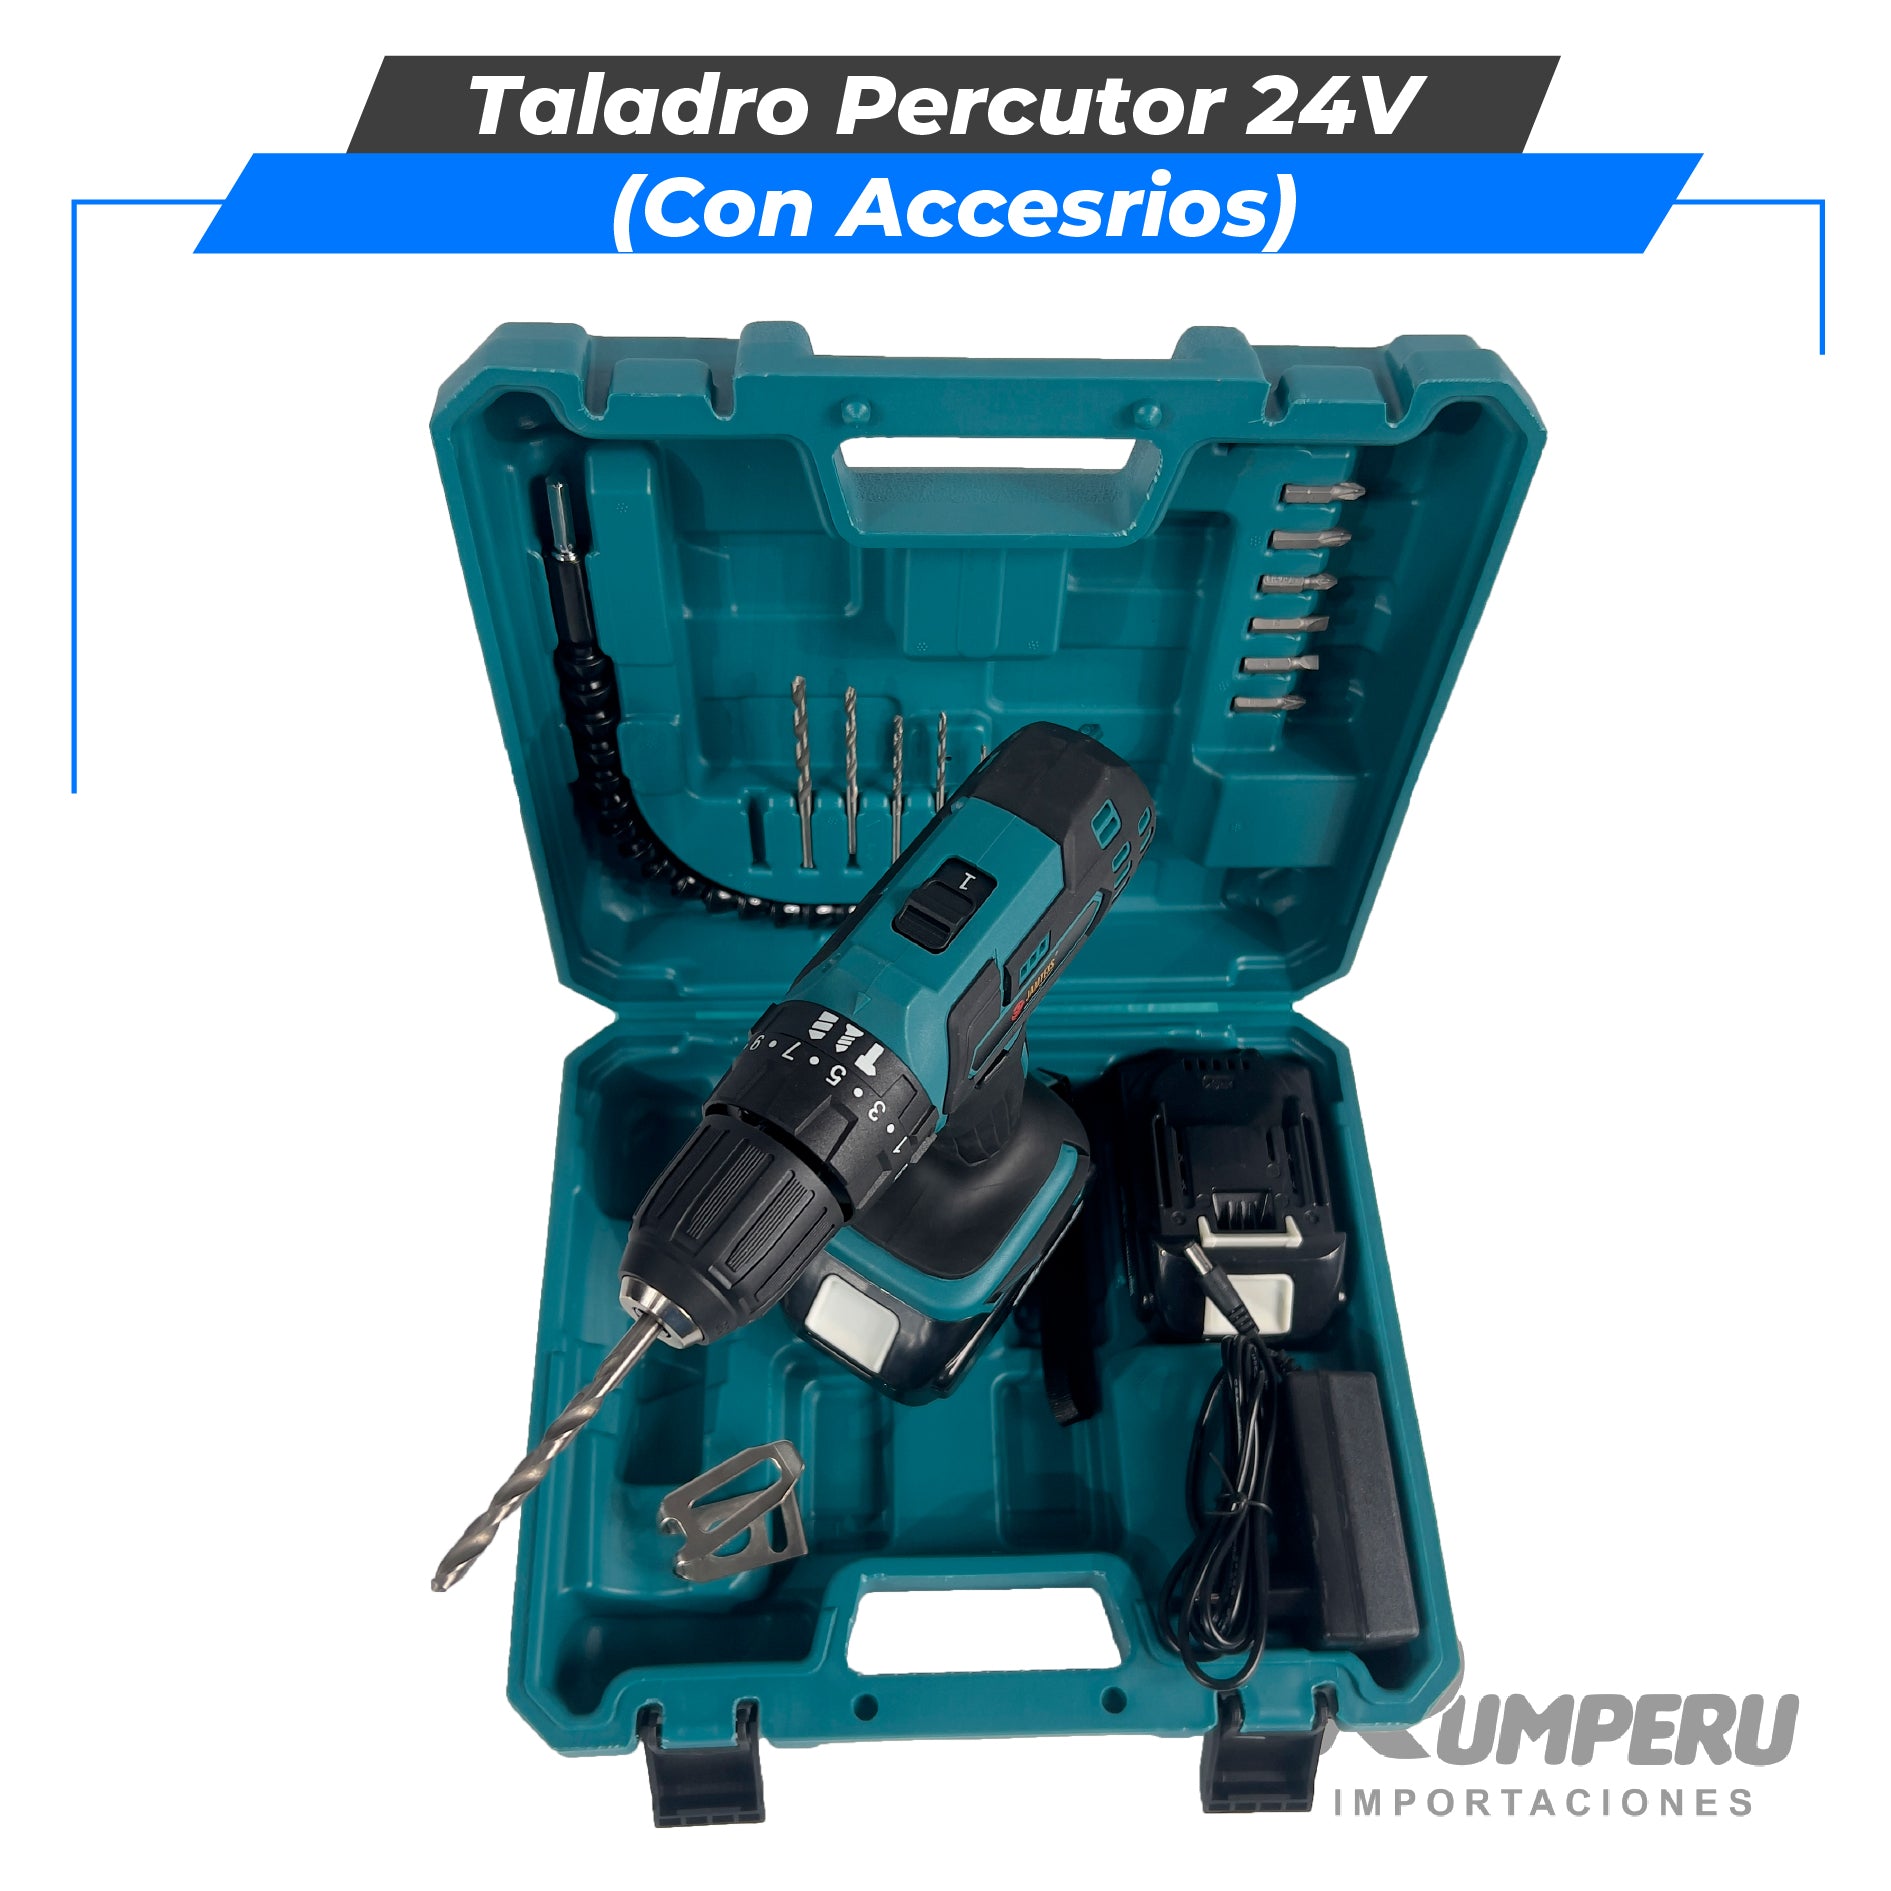 Taladro percutor 24V con Accesorios